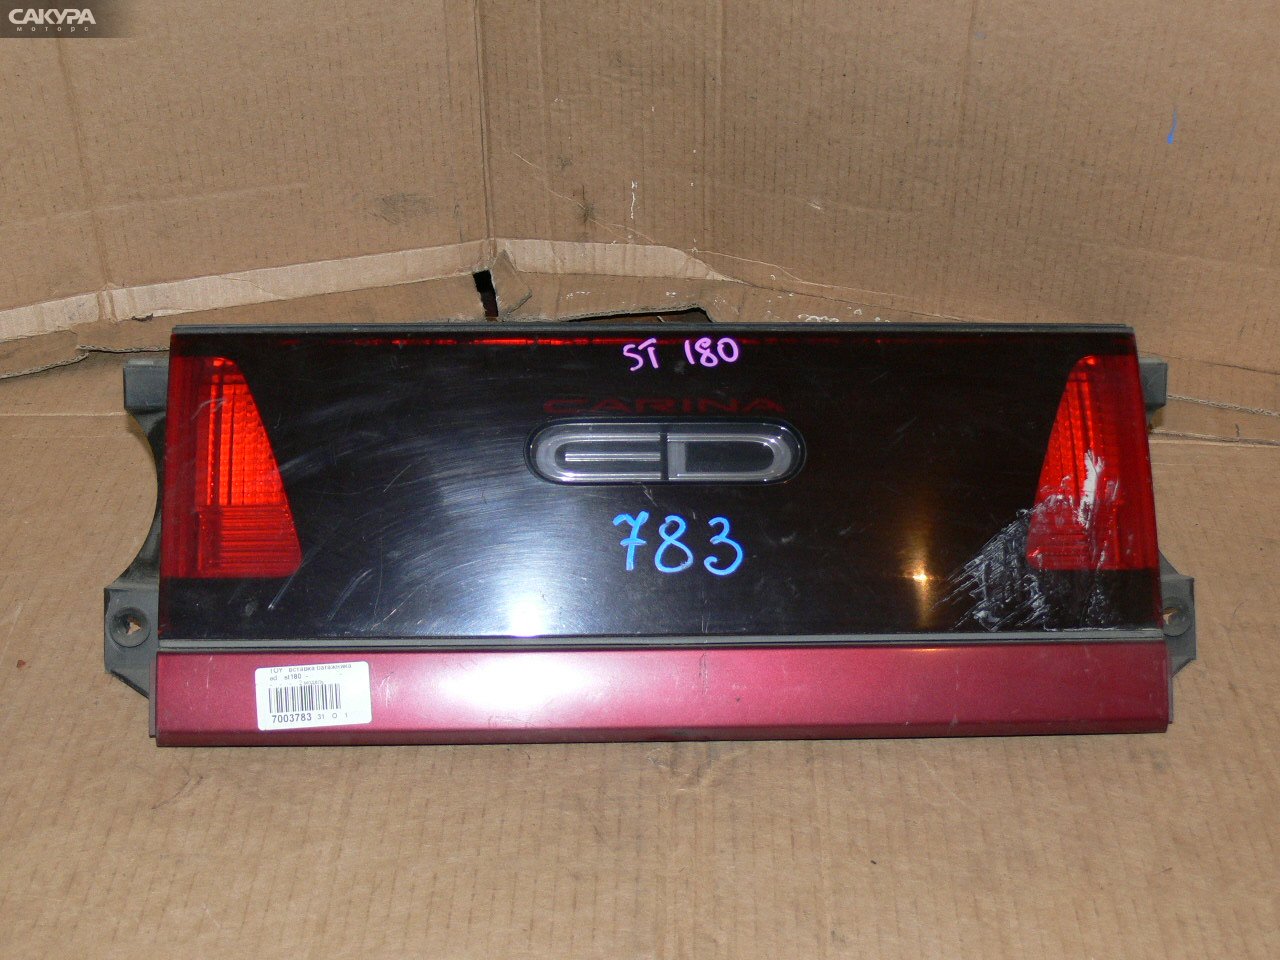 Фонарь вставка багажника Toyota Carina ED ST180: купить в Сакура Иркутск.